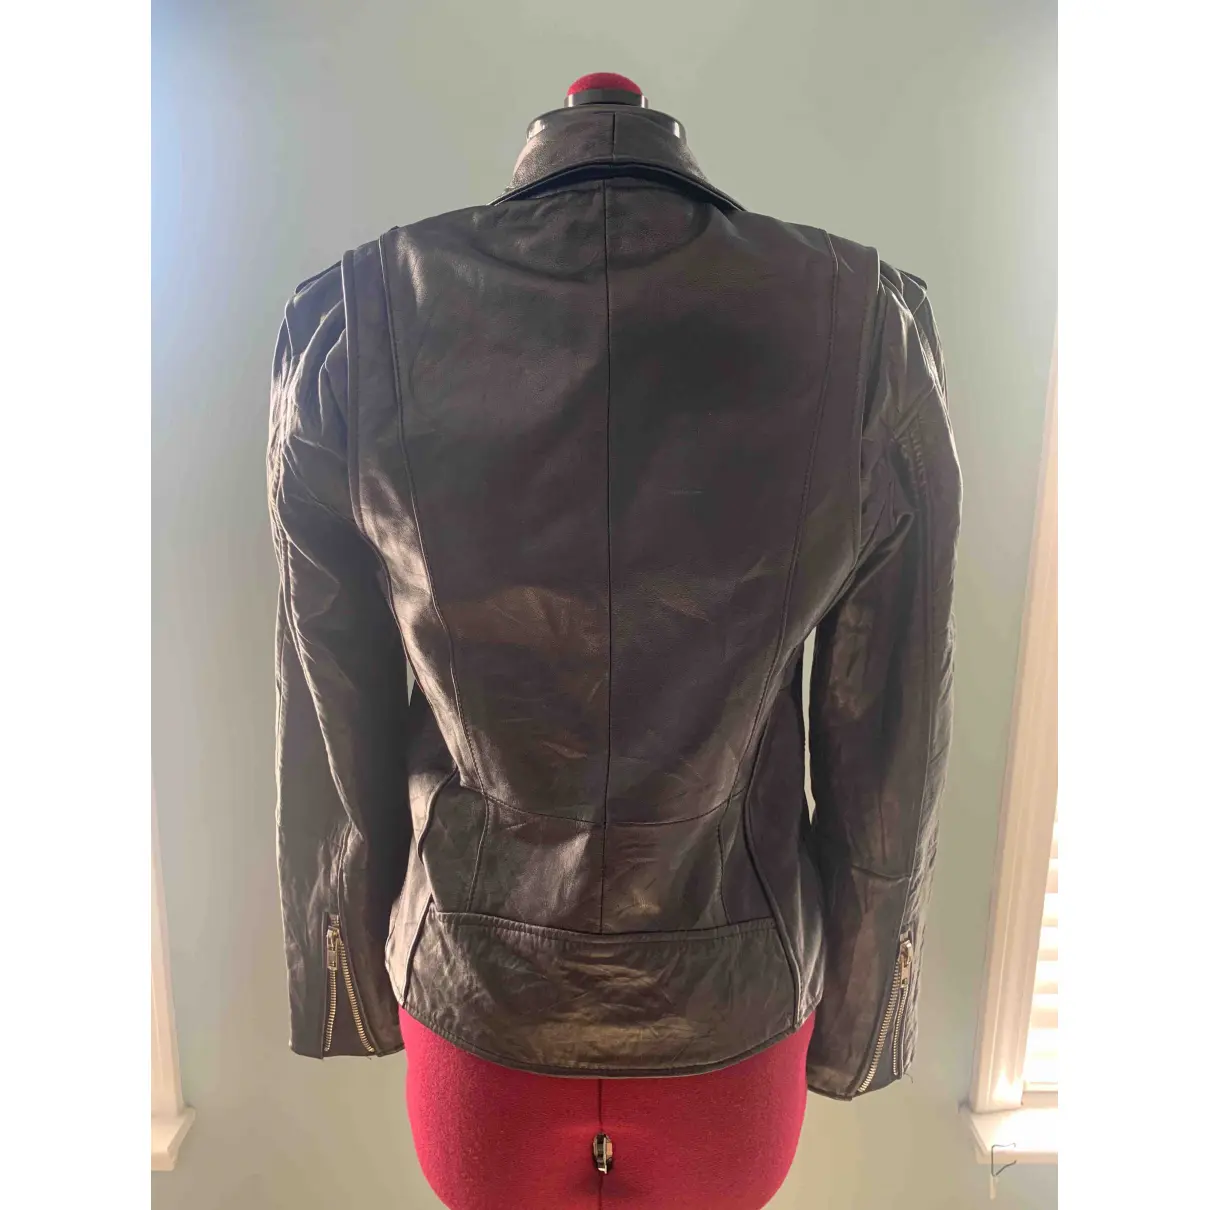 Buy Deadwood Leather biker jacket online